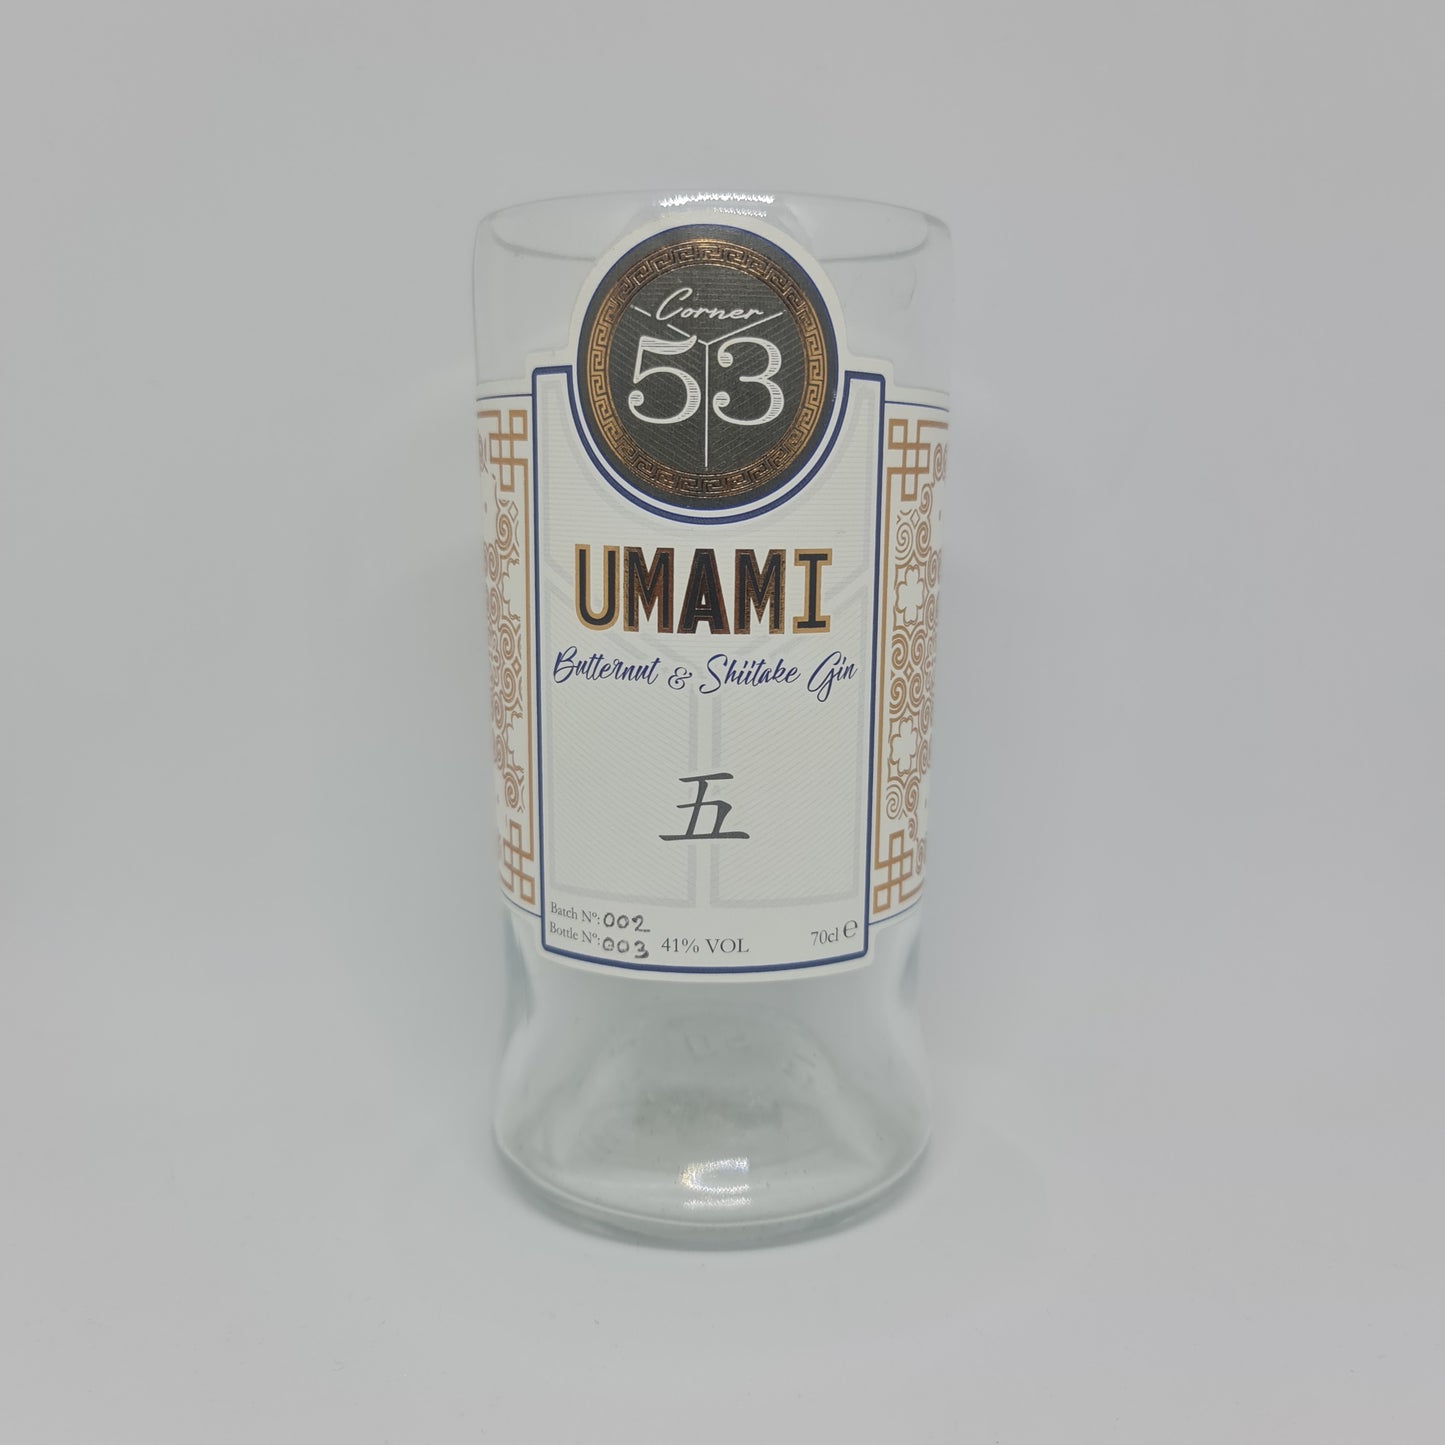 Umami Butternut & Shiitake Gin Bottle Candle